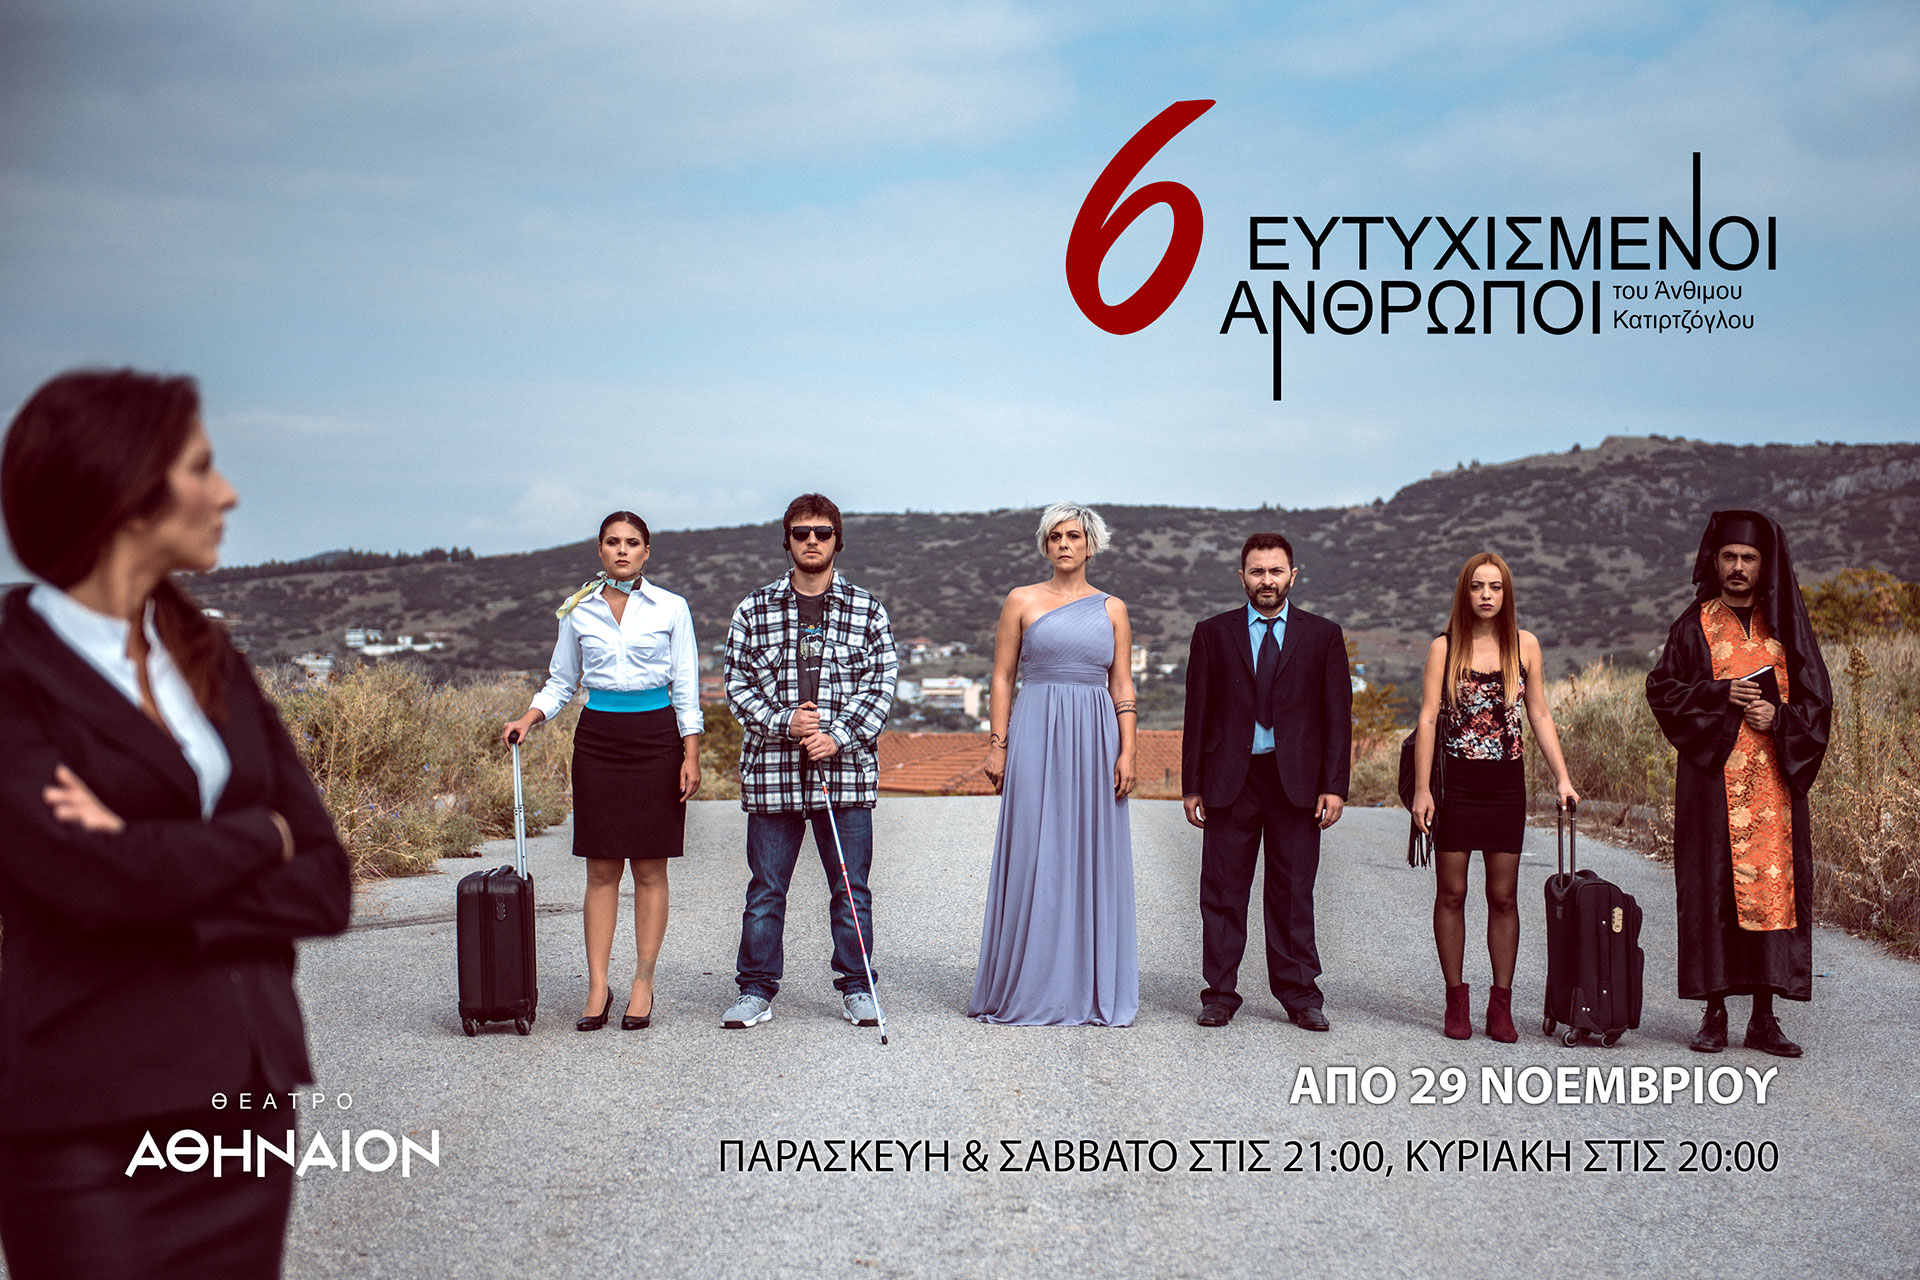 «6 Ευτυχισμένοι Άνθρωποι» από 29 Νοεμβρίου ως 15 Δεκεμβρίου στο Θέατρο Αθήναιον